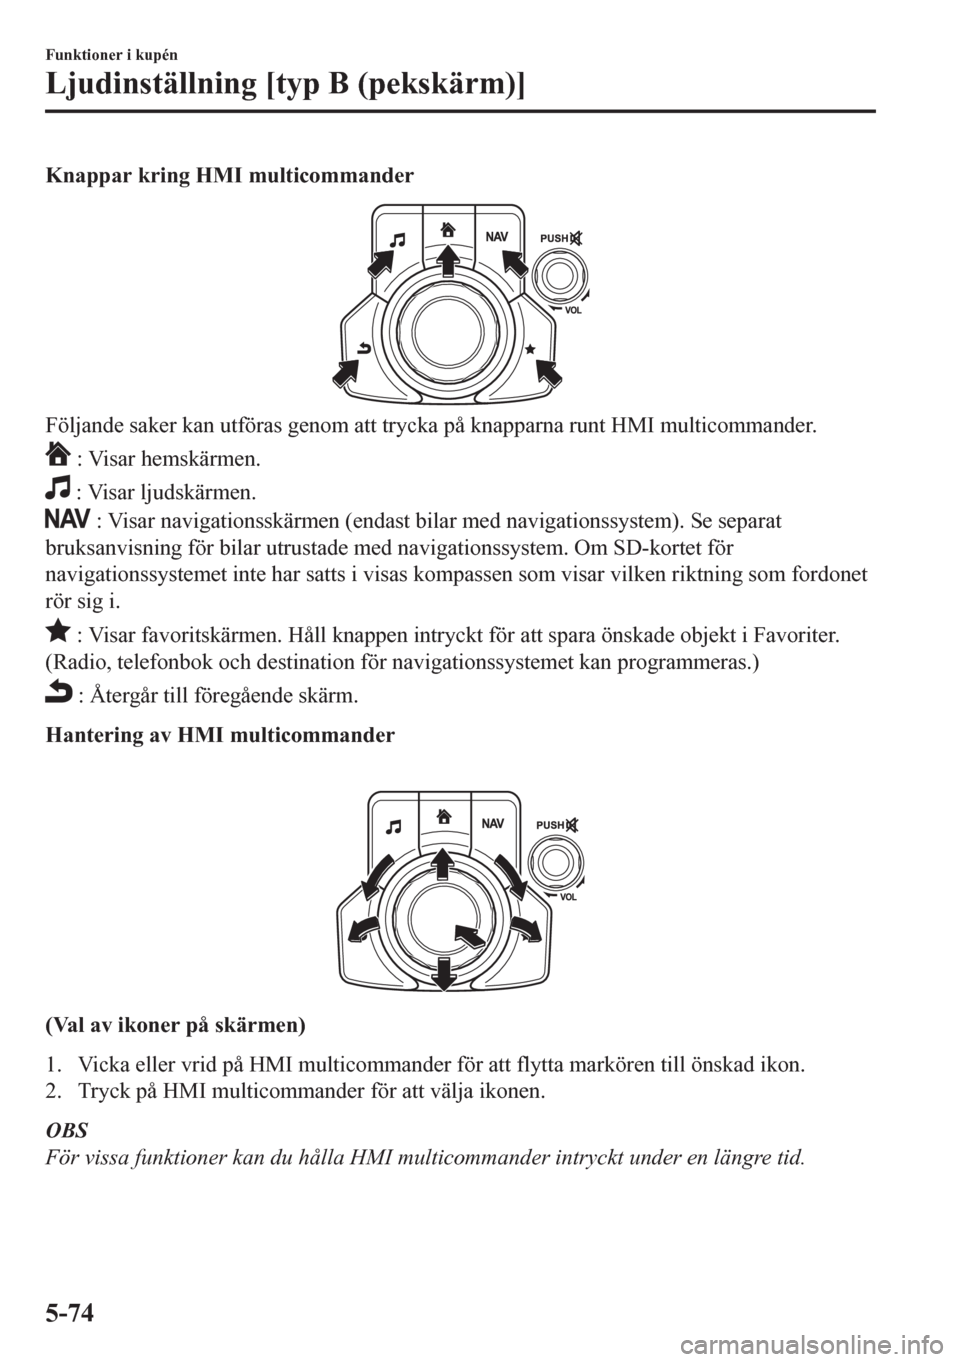 MAZDA MODEL CX-5 2018  Ägarmanual (in Swedish) Knappar kring HMI multicommander
Följande saker kan utföras genom att trycka på knapparna runt HMI multicommander.
 : Visar hemskärmen.
 : Visar ljudskärmen.
 : Visar navigationsskärmen (endast 